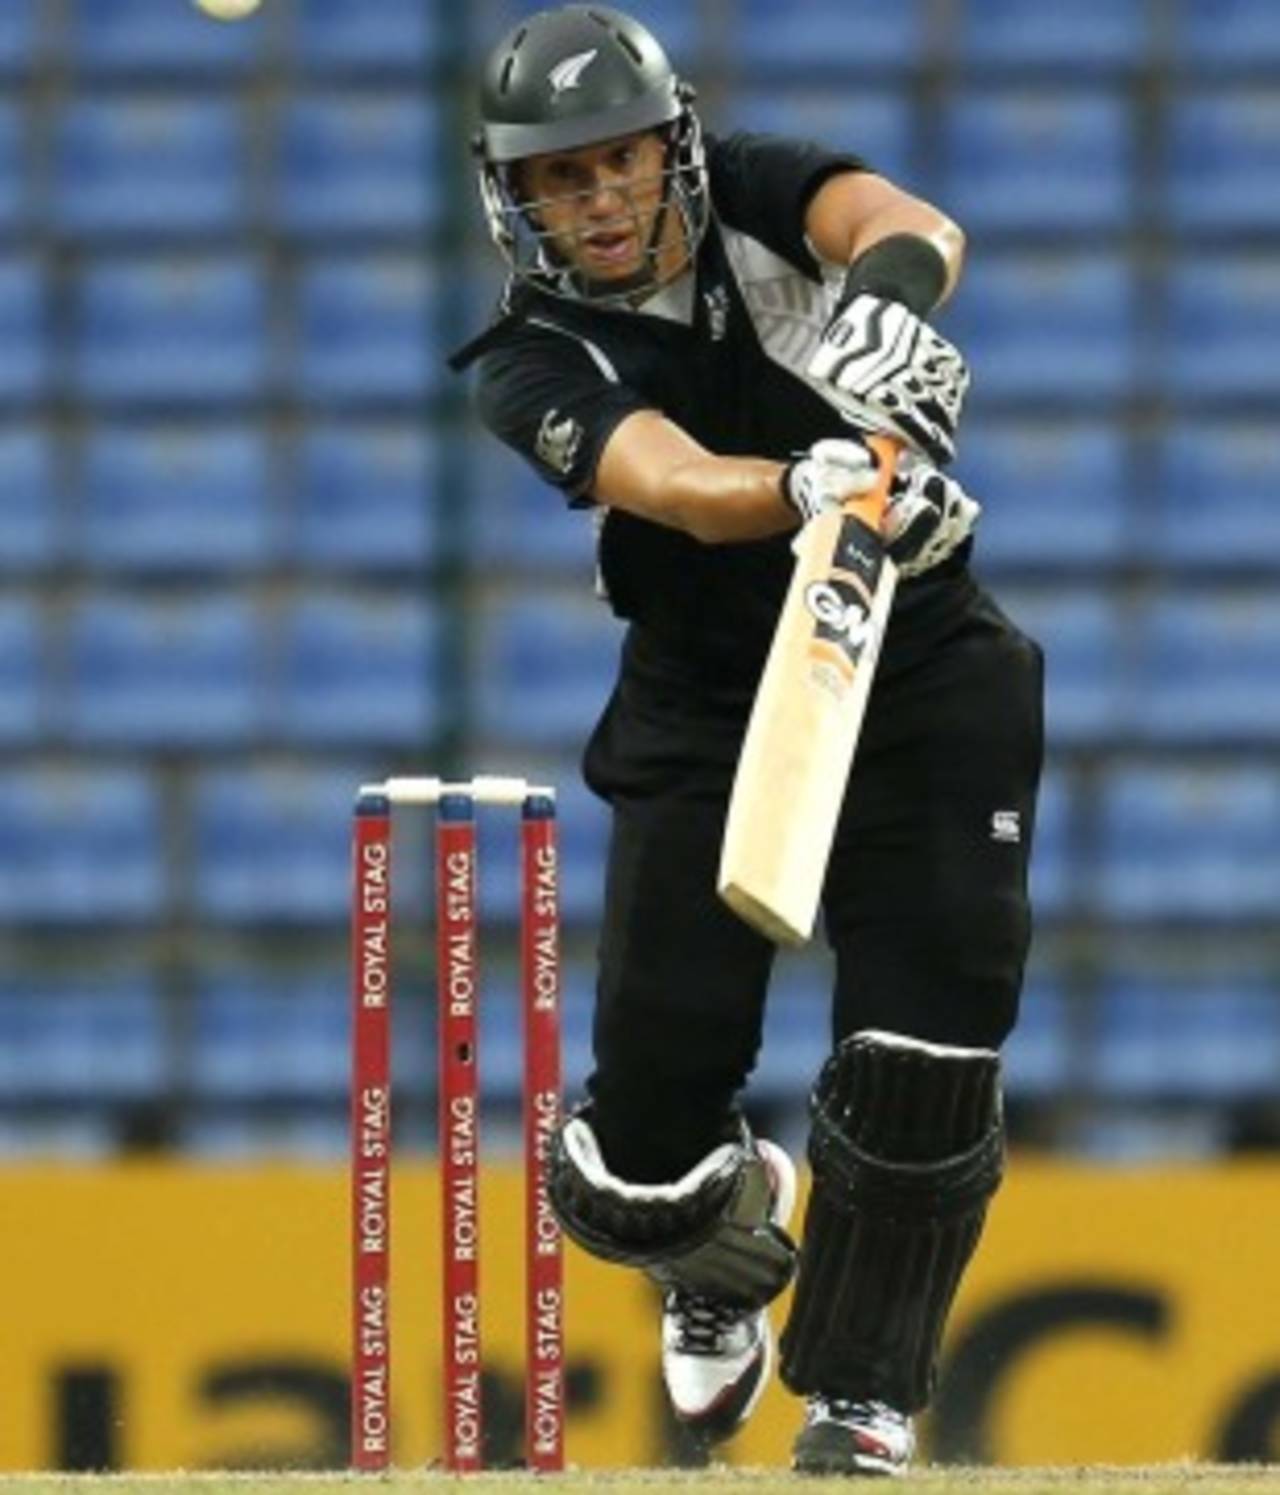 Ross Taylor scored 72, Sri Lanka v New Zealand, 2nd ODI, Pallekele, November 4, 2012